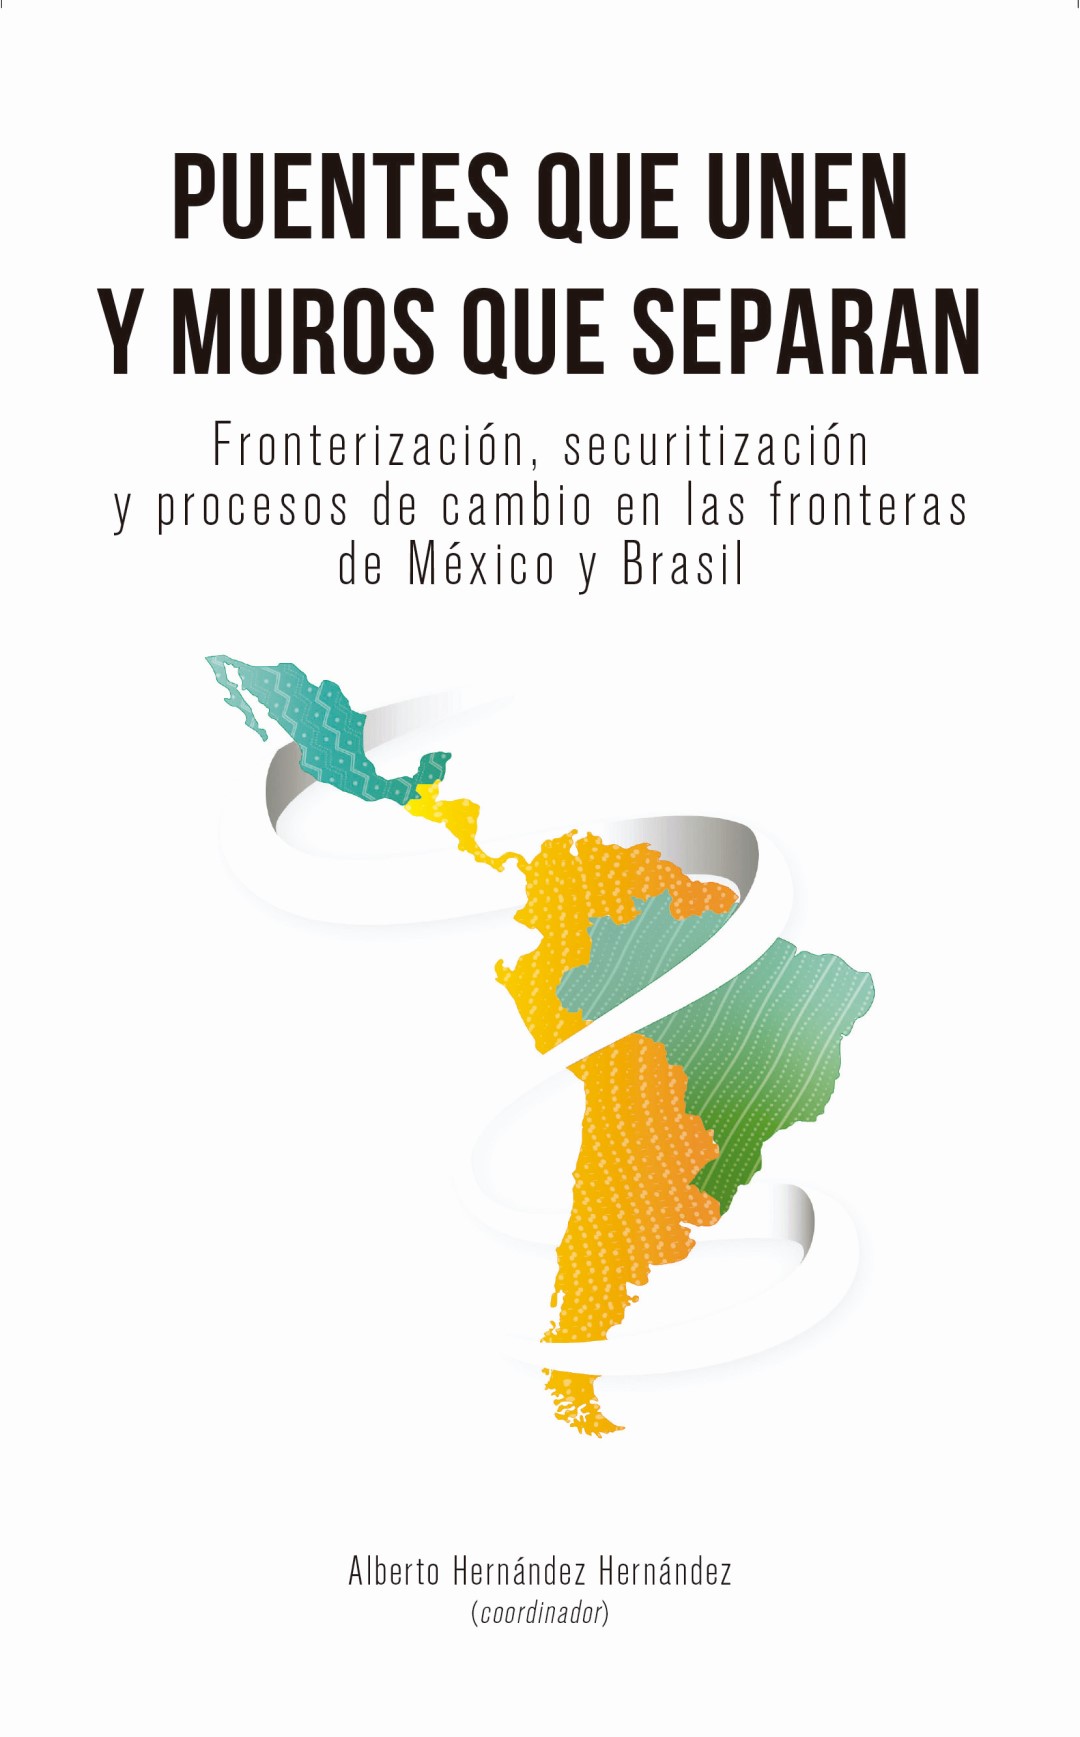 Puentes que se unen y muros que separan. Fronterización, securitización y procesos de cambio en las fronteras de México y Brasil